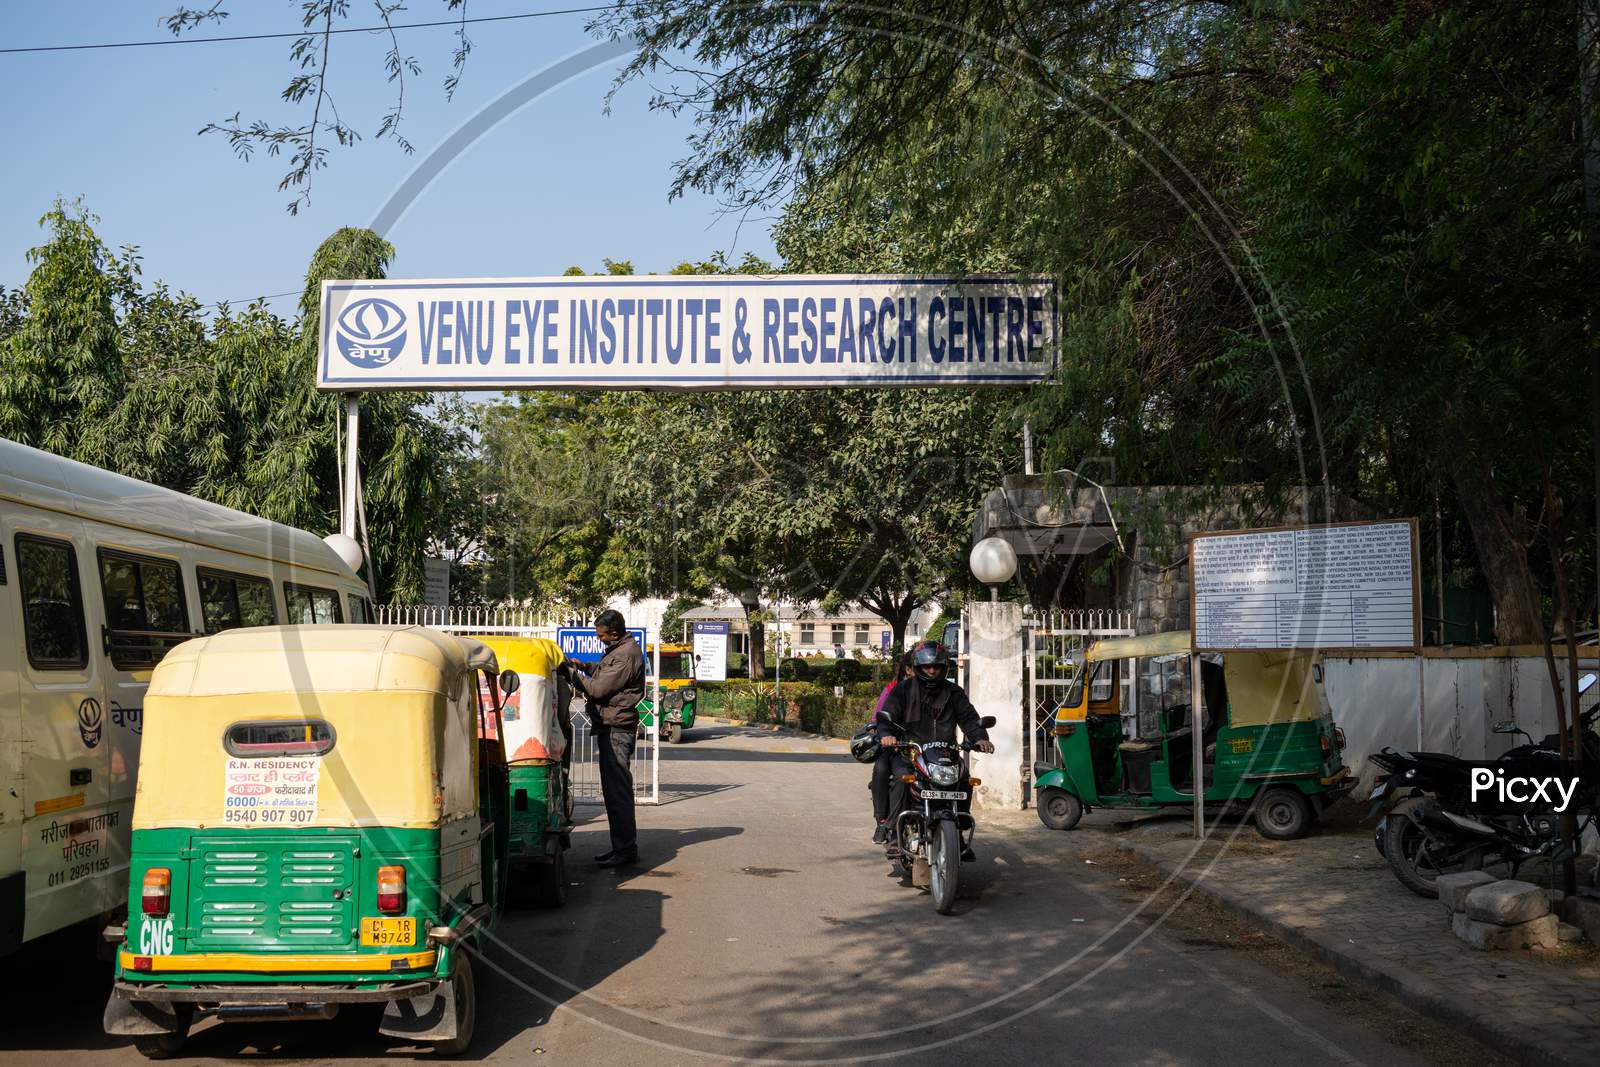 Venu Eye Institute & Research Centre